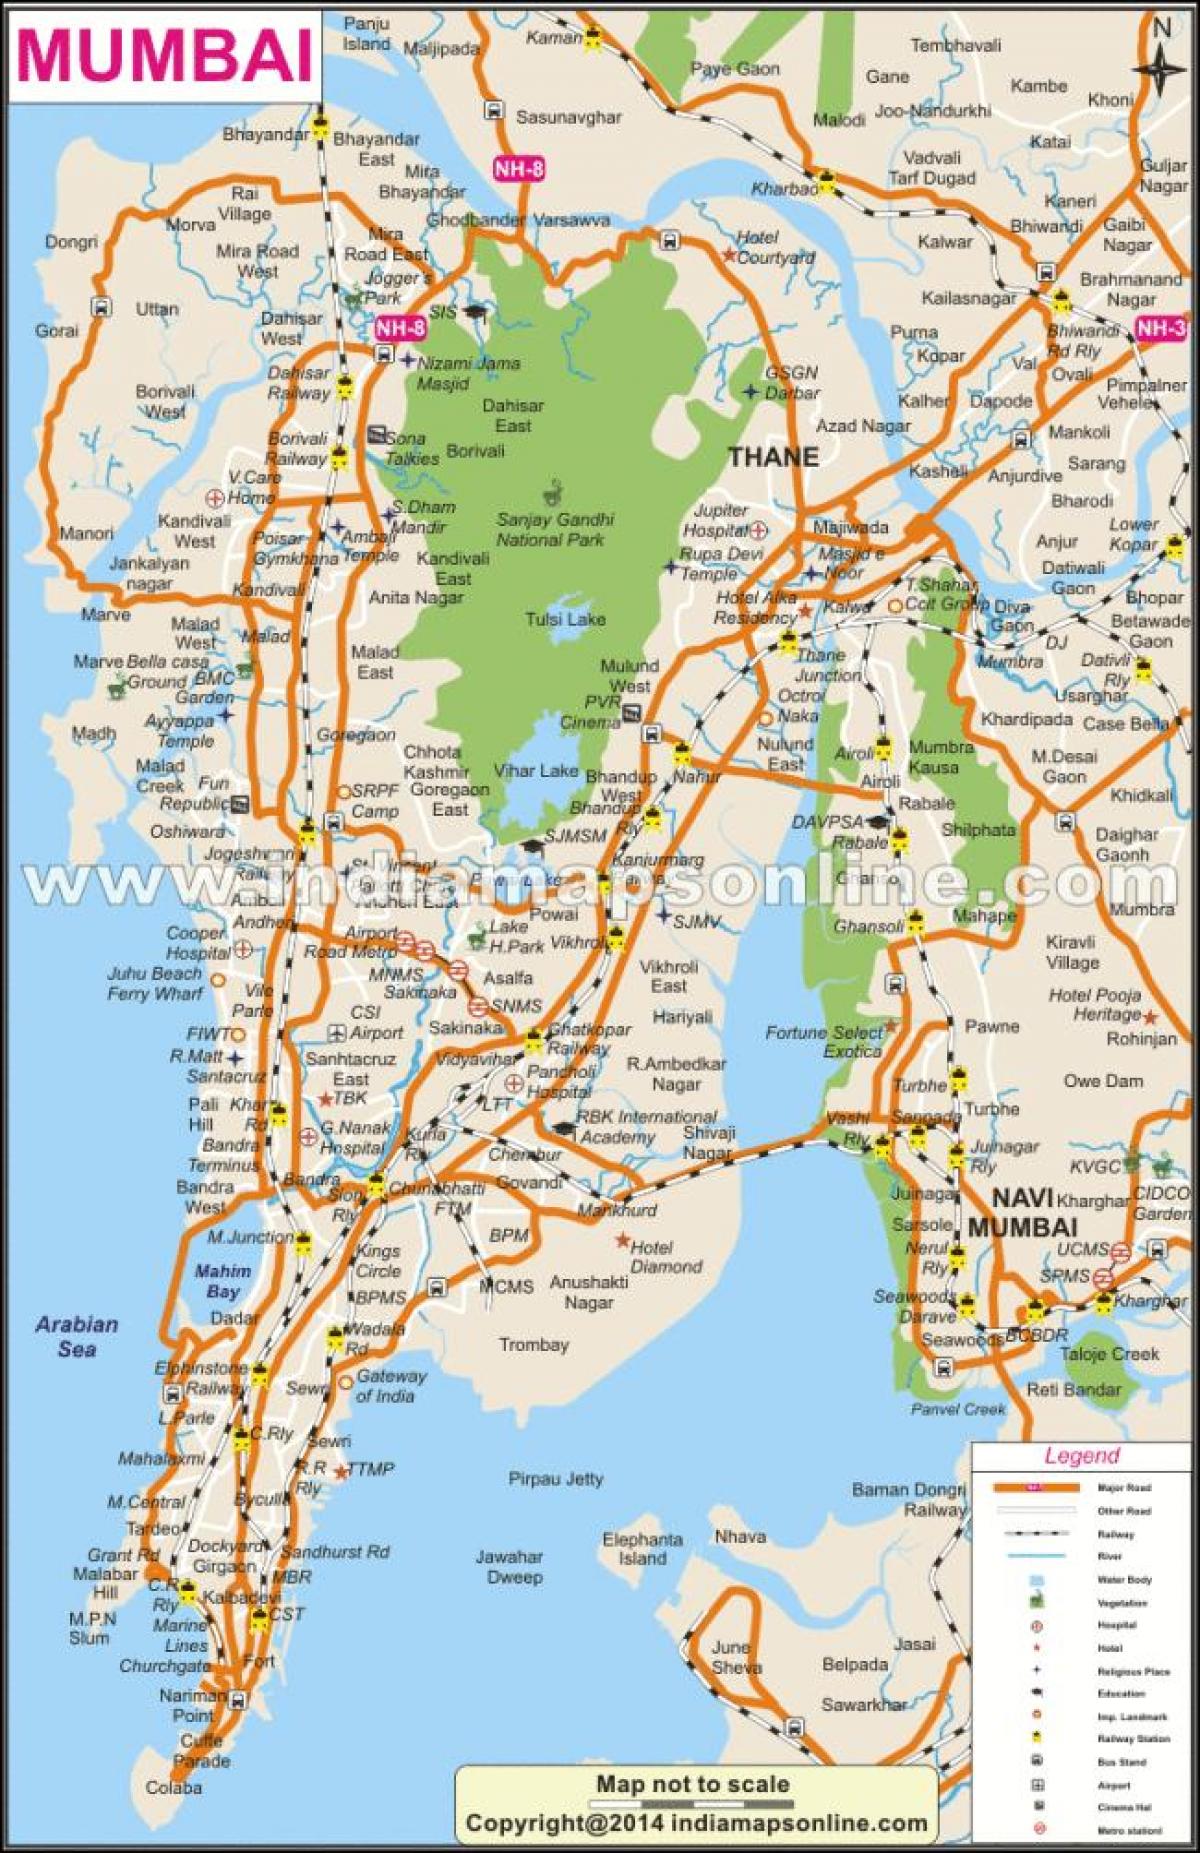 Mumbai sur la carte